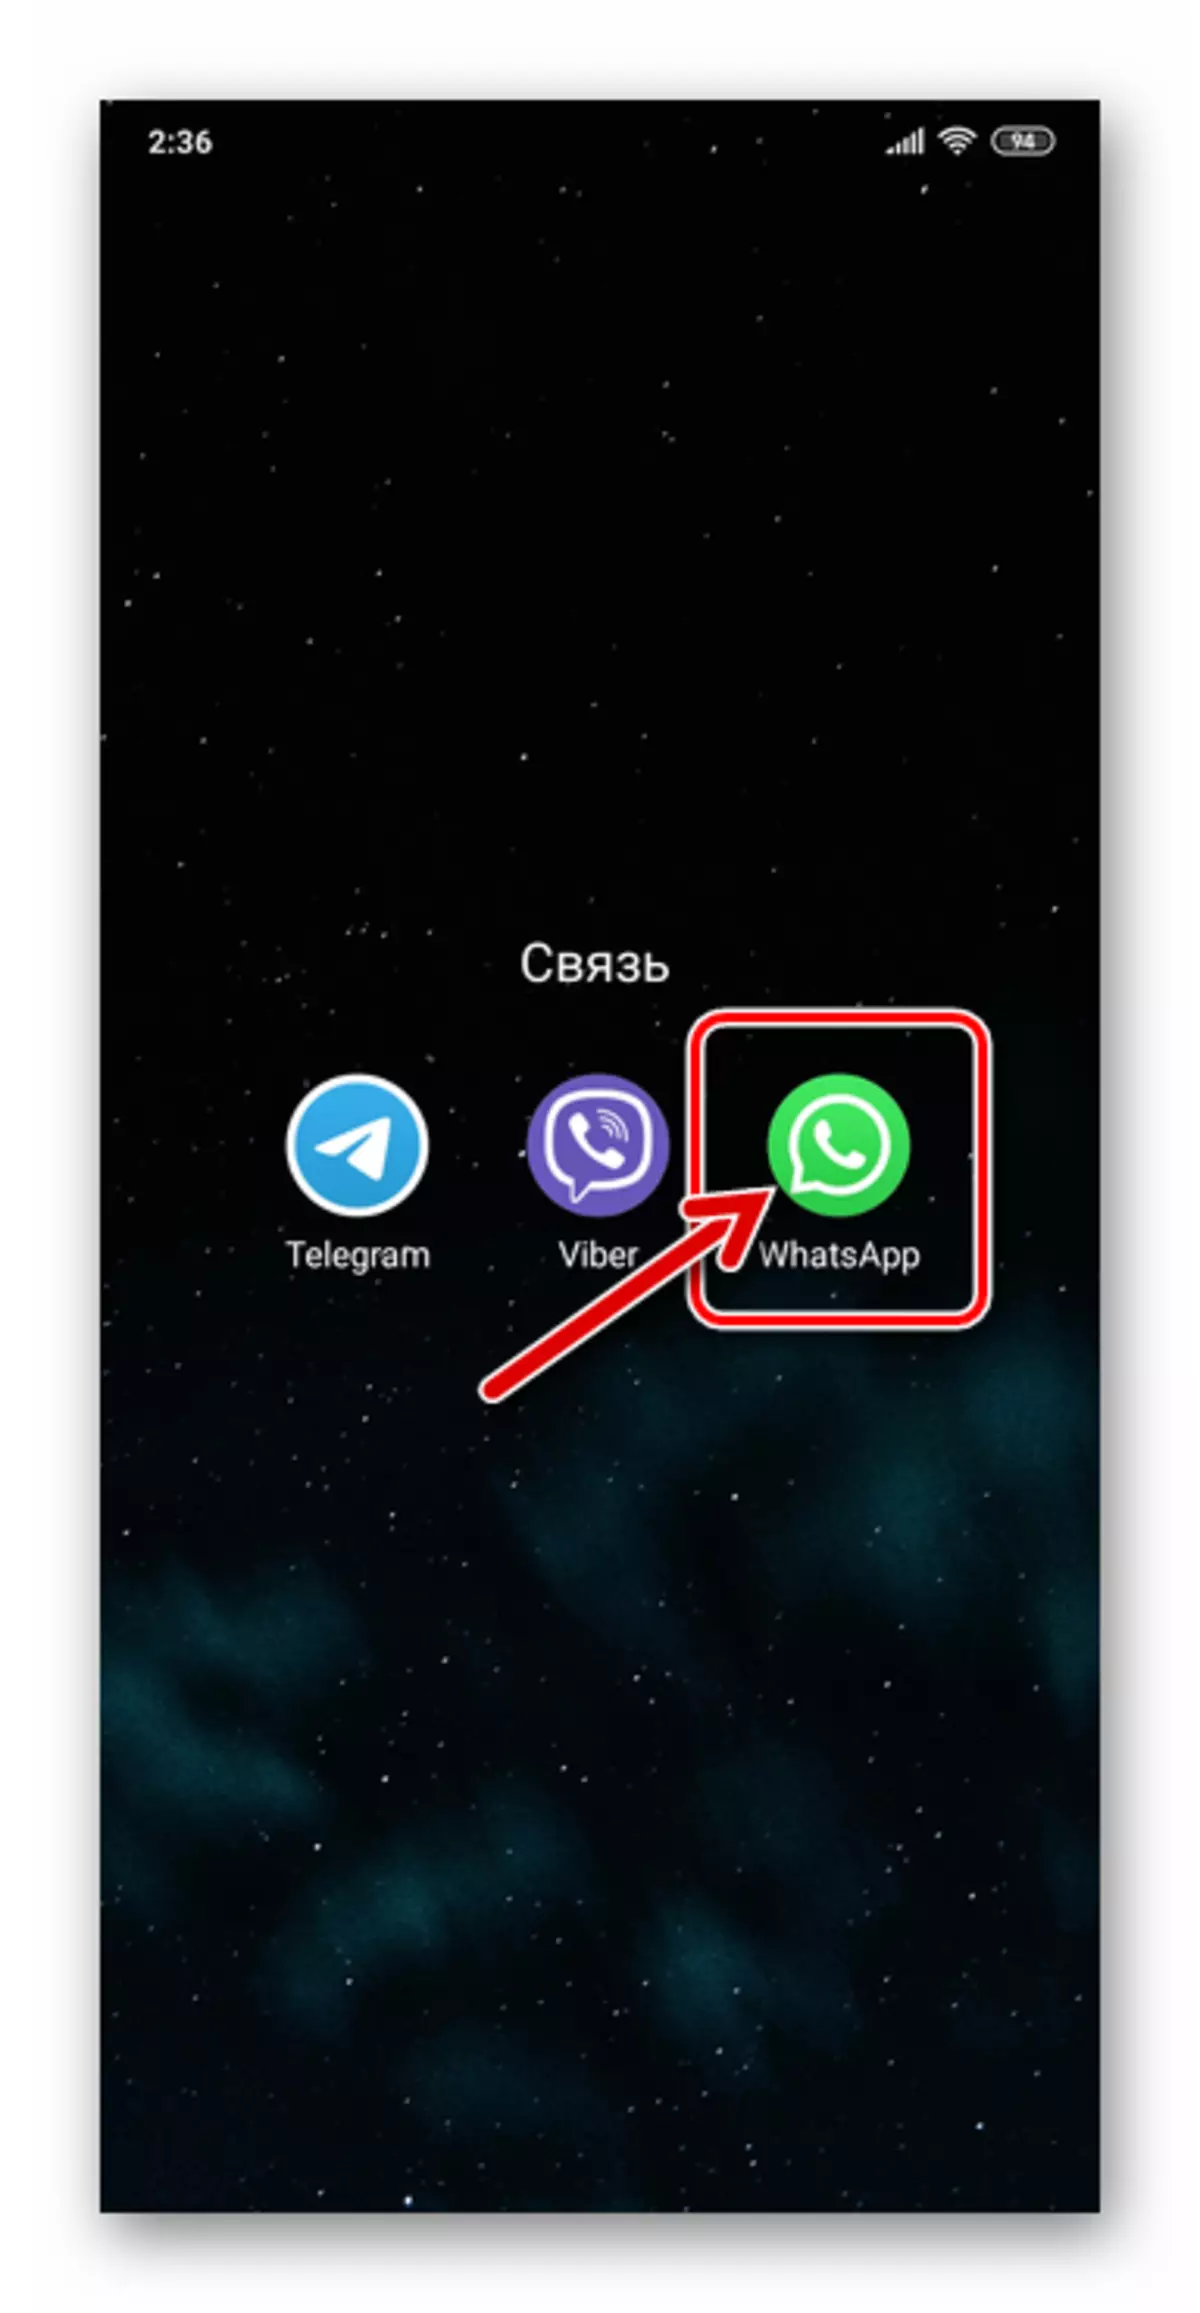 Whatsapp para android executando o mensageiro para ir ao chat com o usuário chamado por vídeo